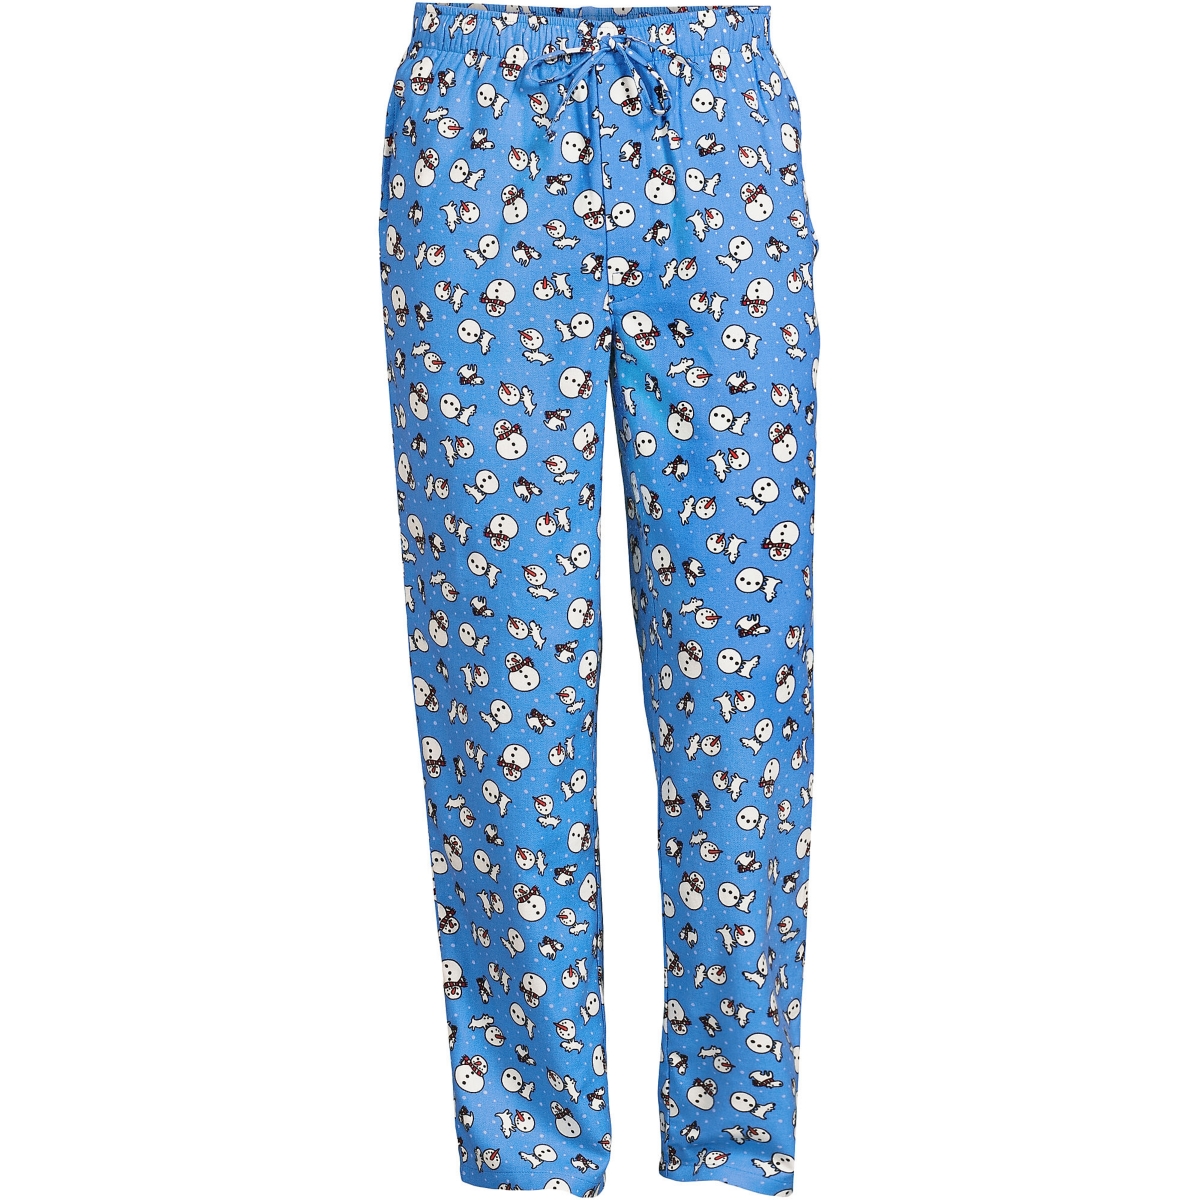 Lands' End Men's Flannel Pajama Pants